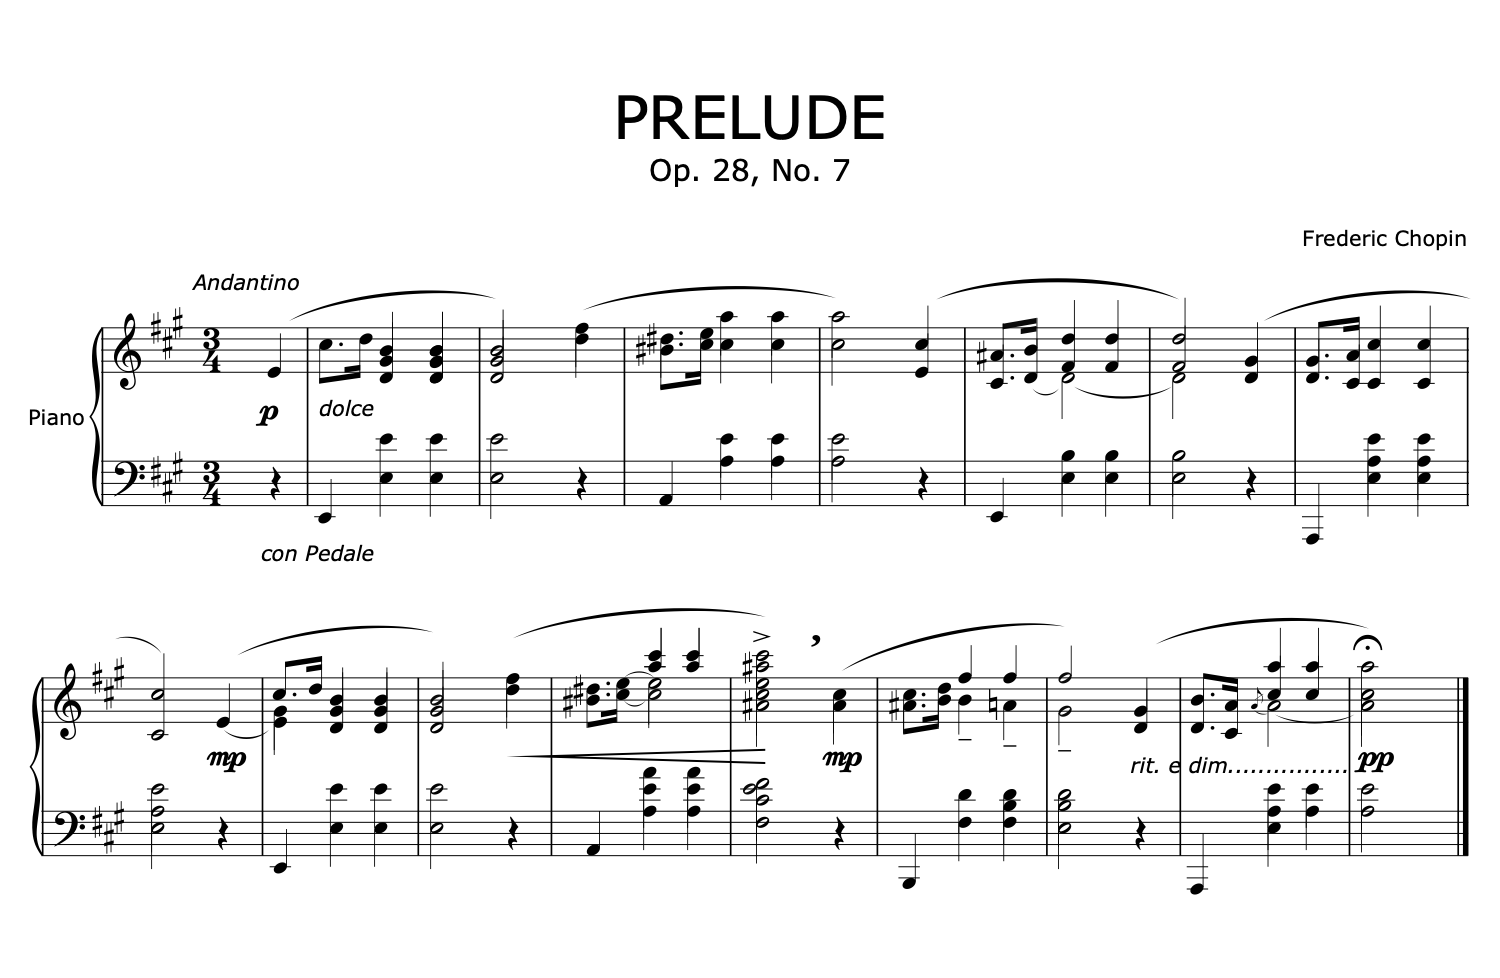 Frederic Chopin's Prelude No. 7